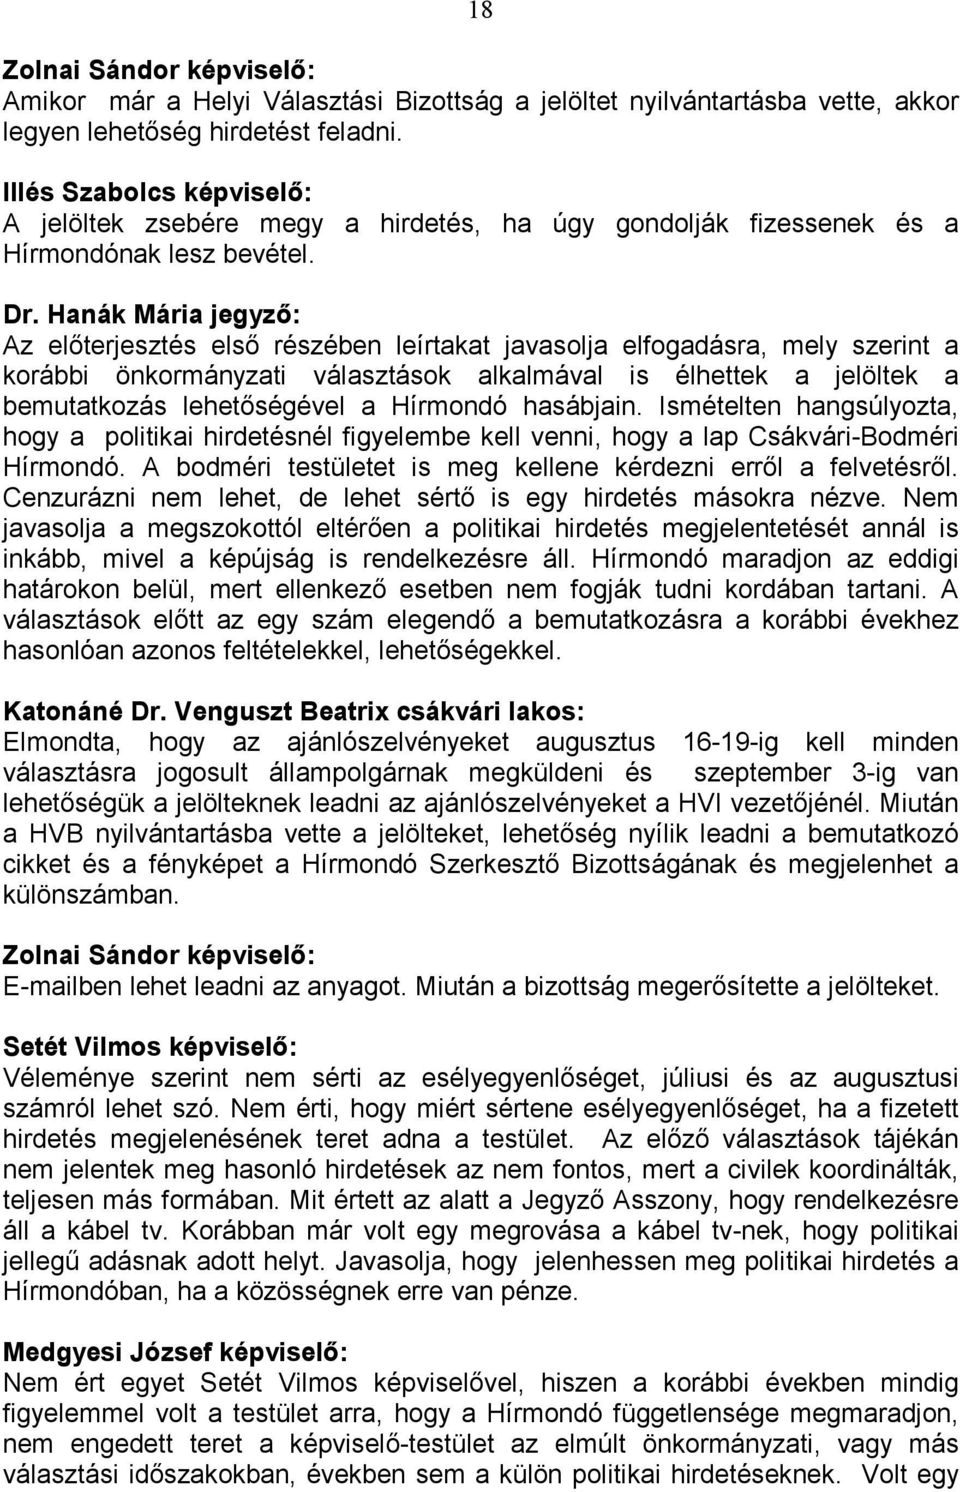 Hanák Mária jegyzı: Az elıterjesztés elsı részében leírtakat javasolja elfogadásra, mely szerint a korábbi önkormányzati választások alkalmával is élhettek a jelöltek a bemutatkozás lehetıségével a